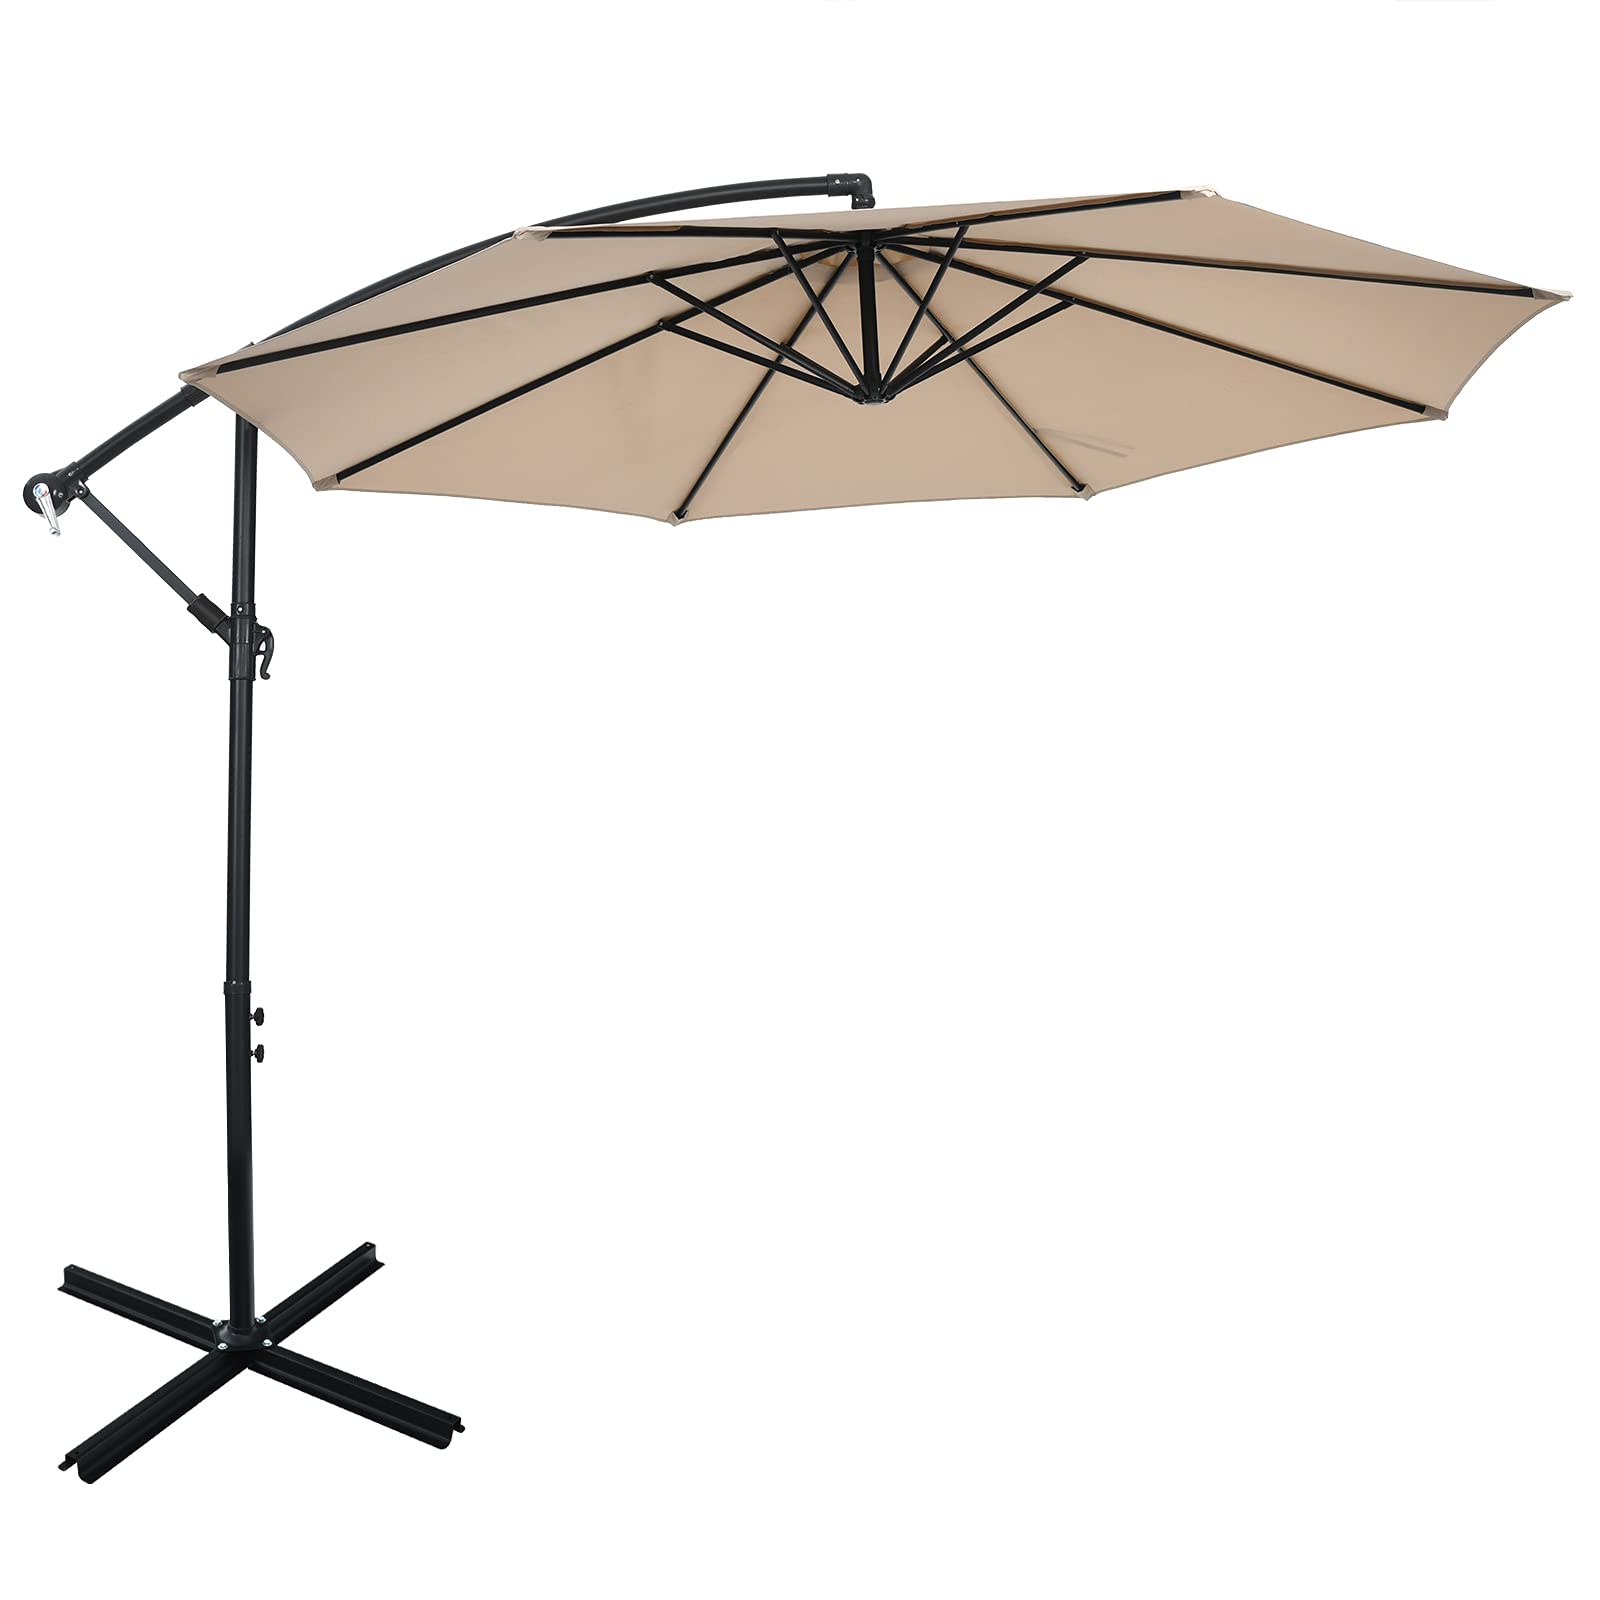 Giantex 10FT Patio Offset Umbrella, 8 Ribs Cantilever Umbrella Outdoor w/Crank, Cross Base